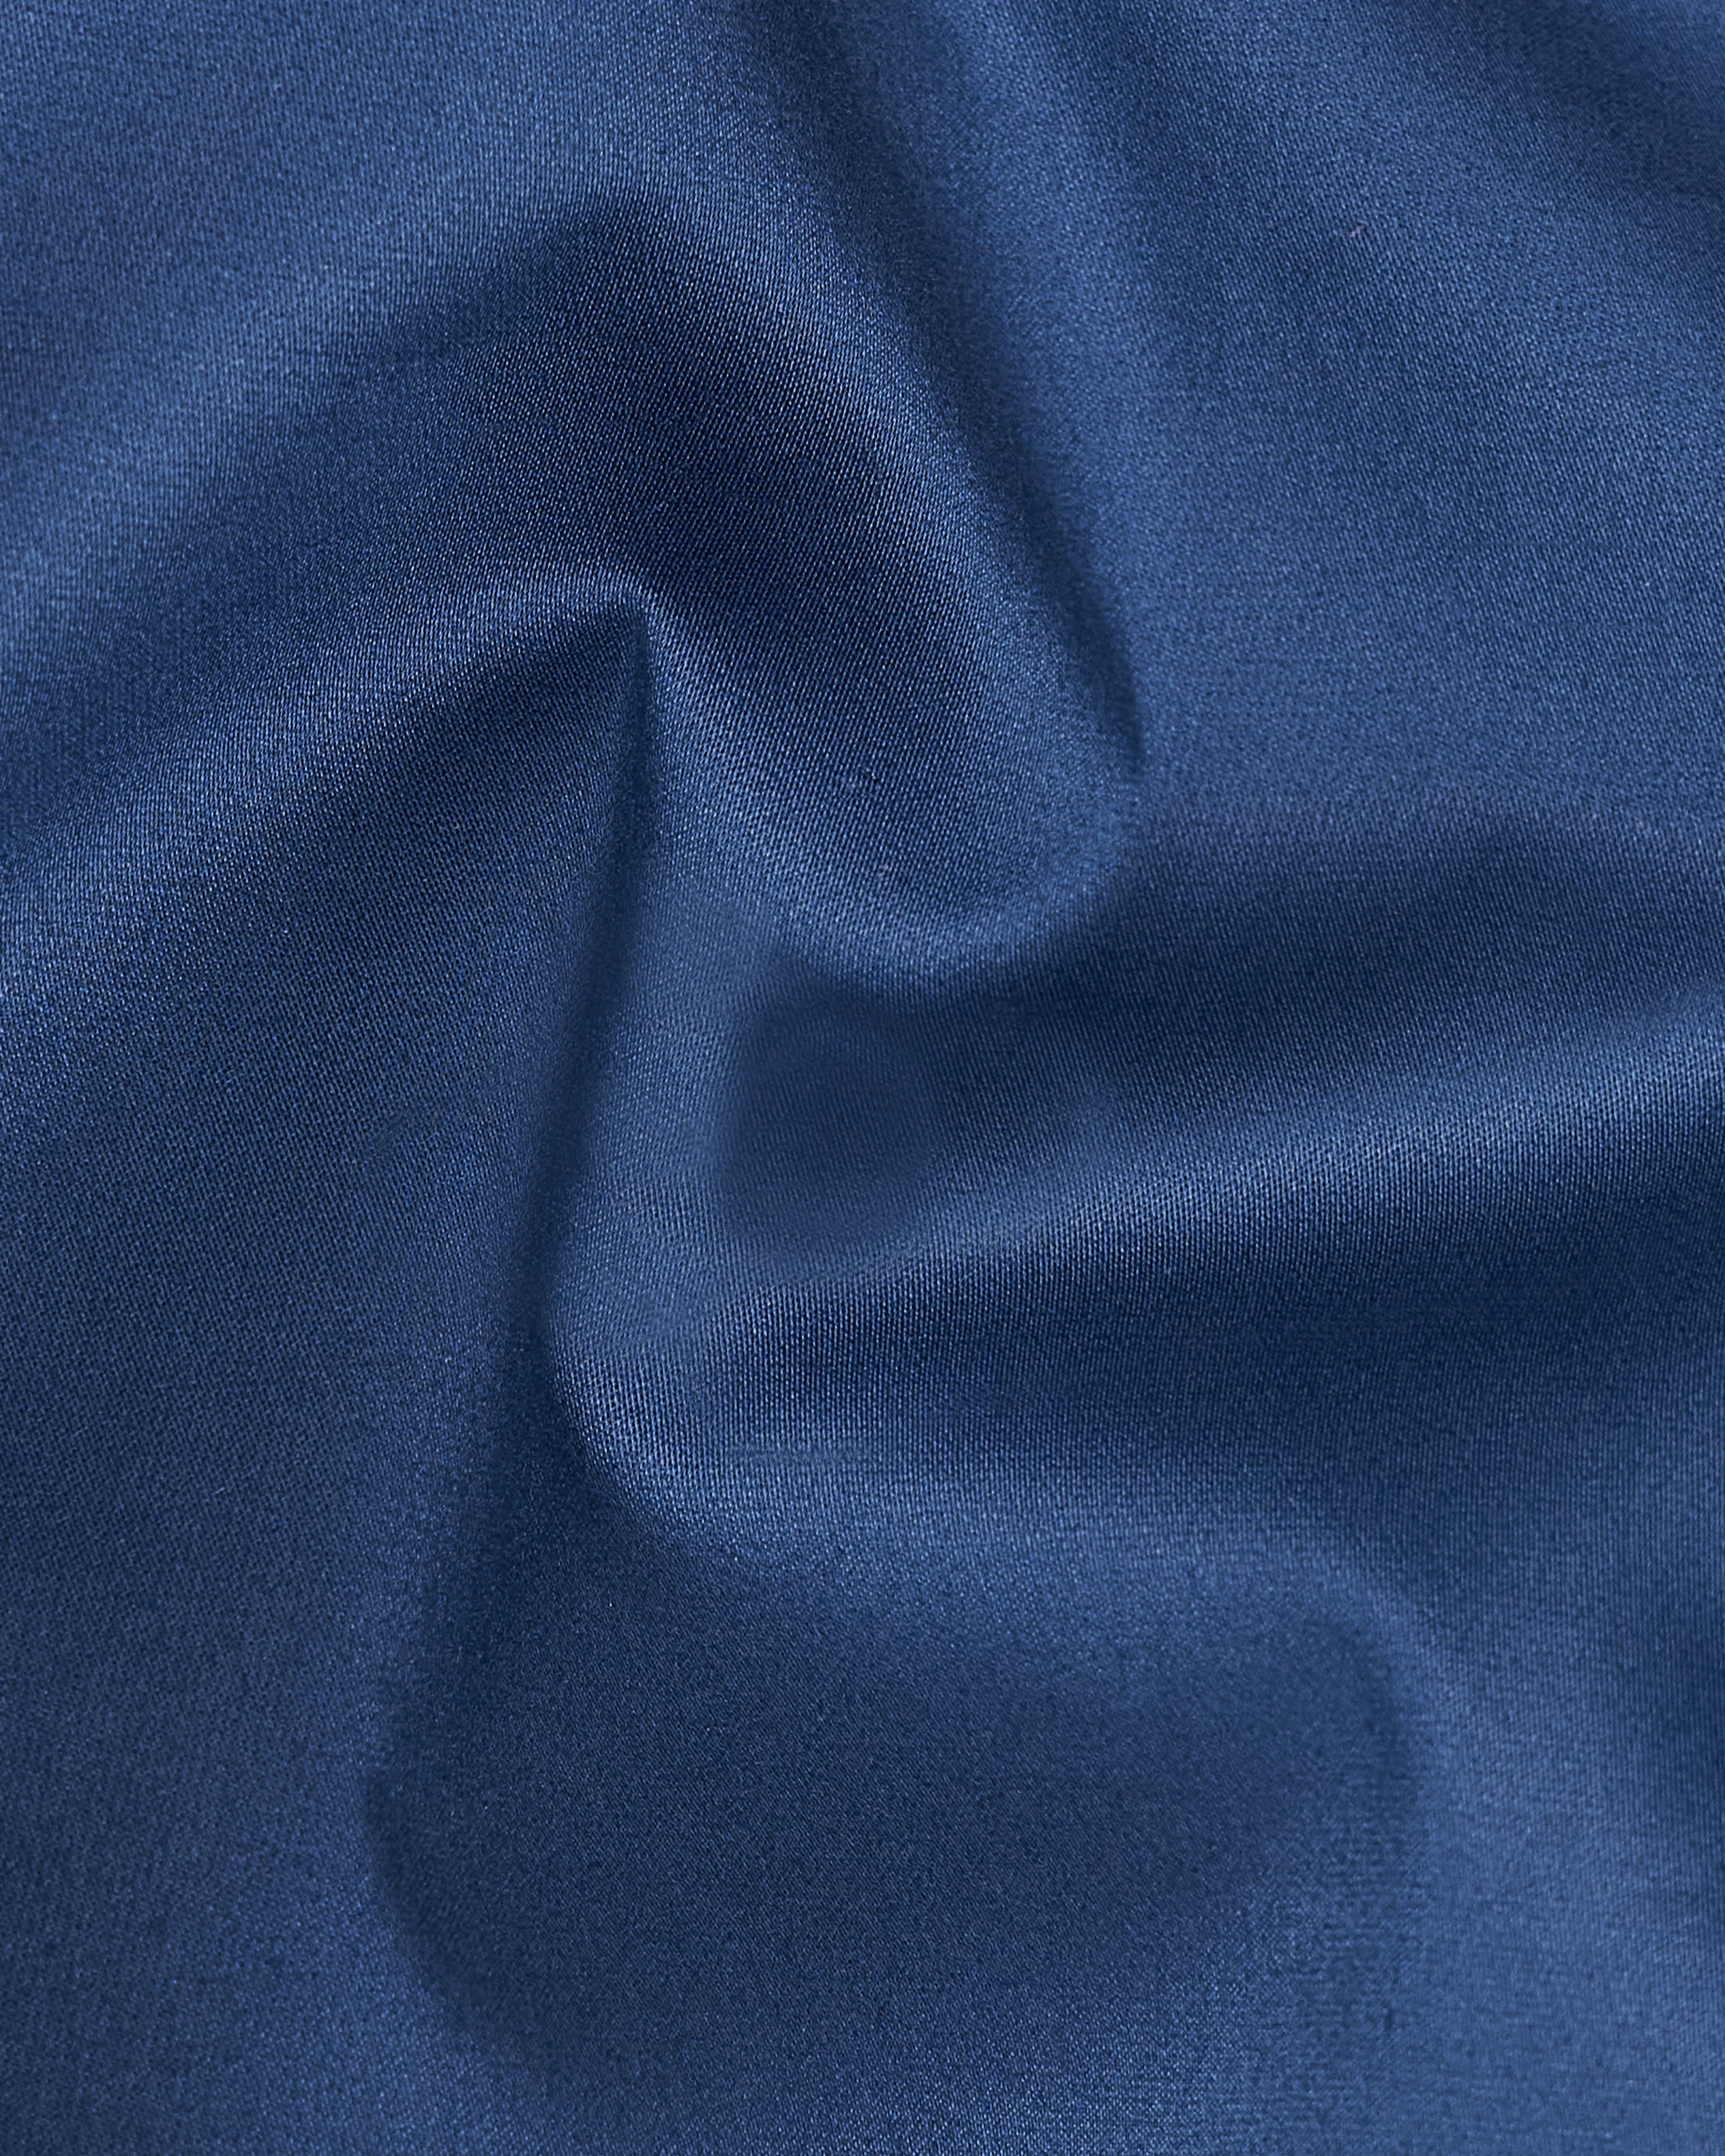 Rhino Blue Super Soft Premium Cotton Shirt 9332-38, 9332-H-38, 9332-39, 9332-H-39, 9332-40, 9332-H-40, 9332-42, 9332-H-42, 9332-44, 9332-H-44, 9332-46, 9332-H-46, 9332-48, 9332-H-48, 9332-50, 9332-H-50, 9332-52, 9332-H-52